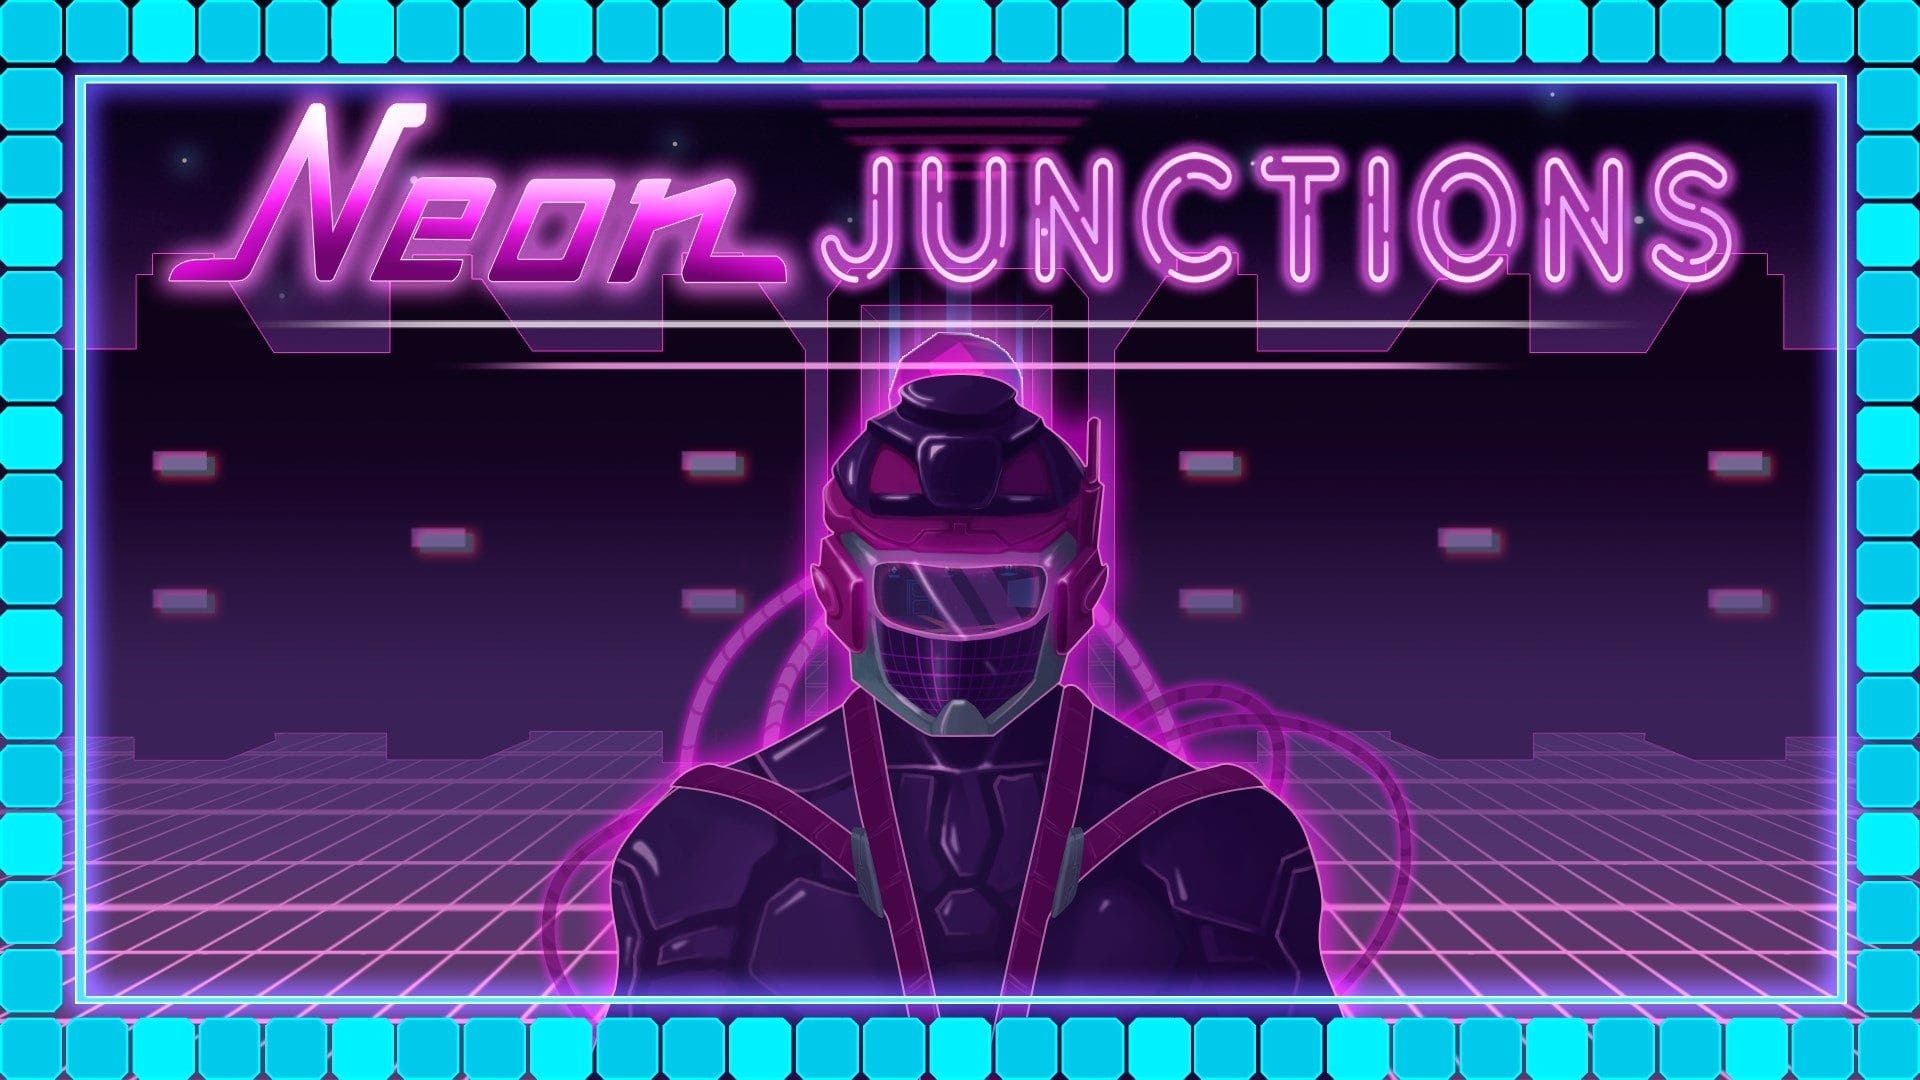 Neon Junctions llegará a Nintendo Switch: disponible el 7 de junio en la eShop